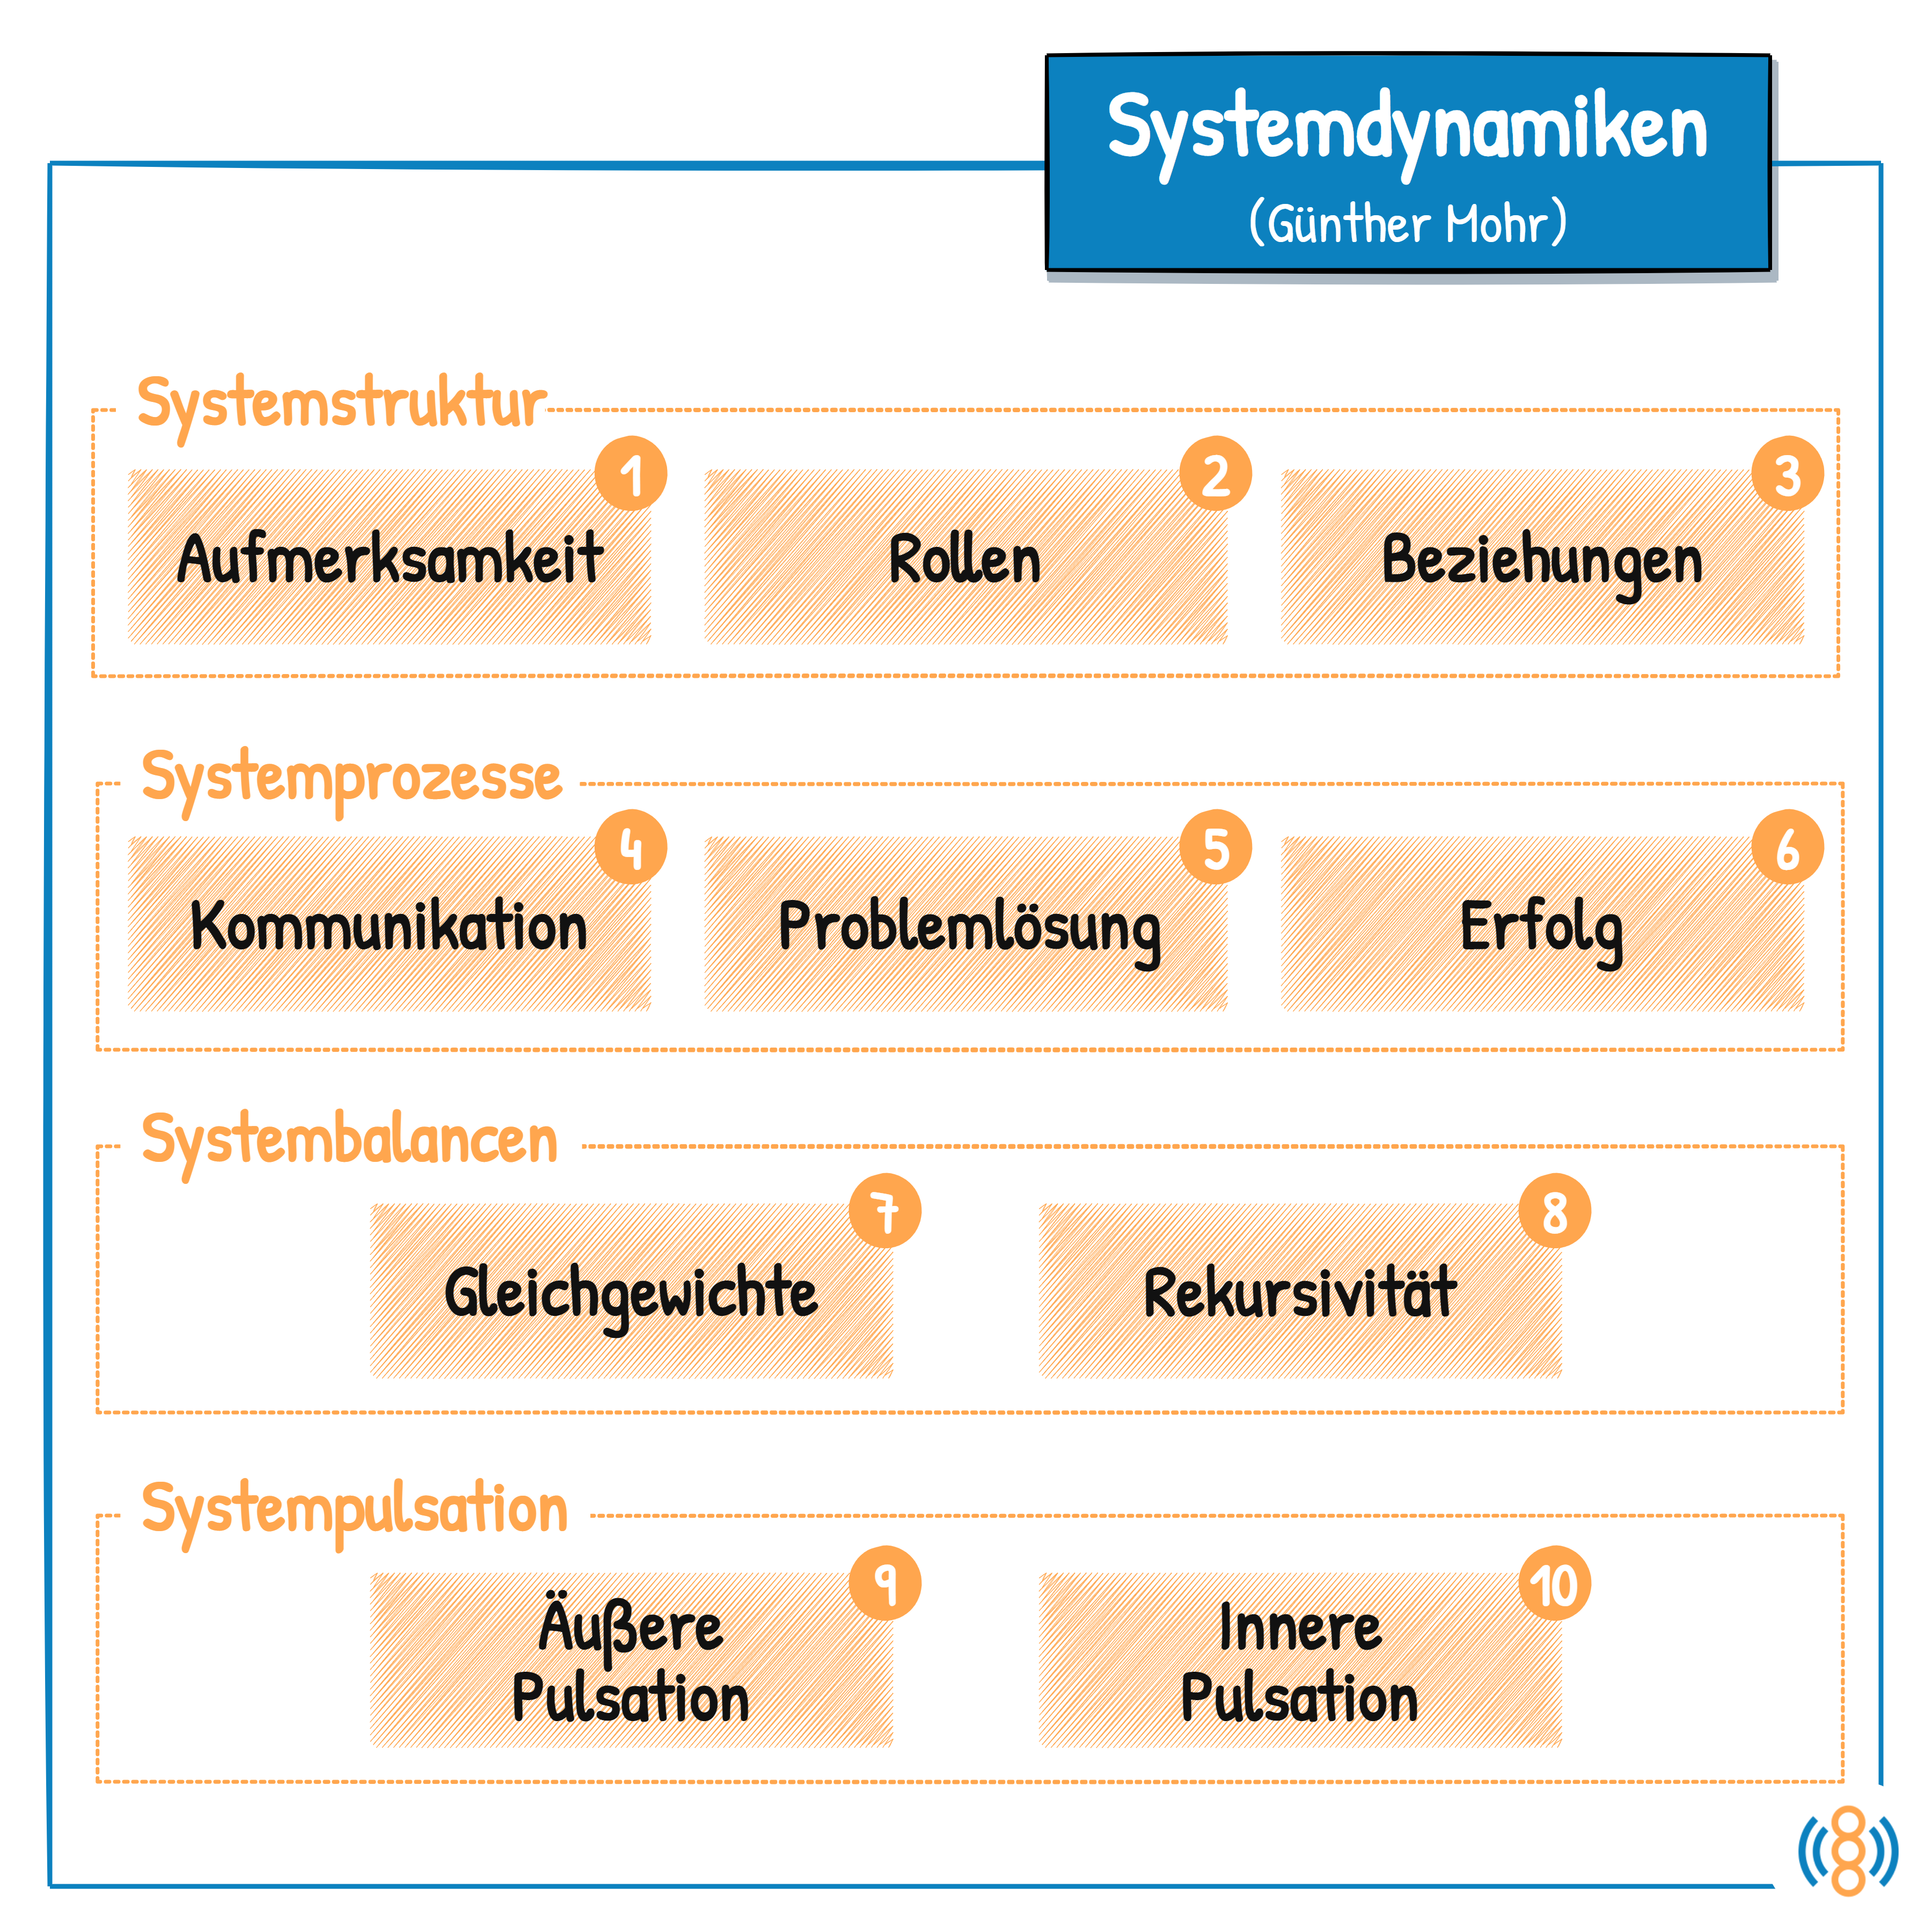 Systemdynamiken (Günther Mohr)